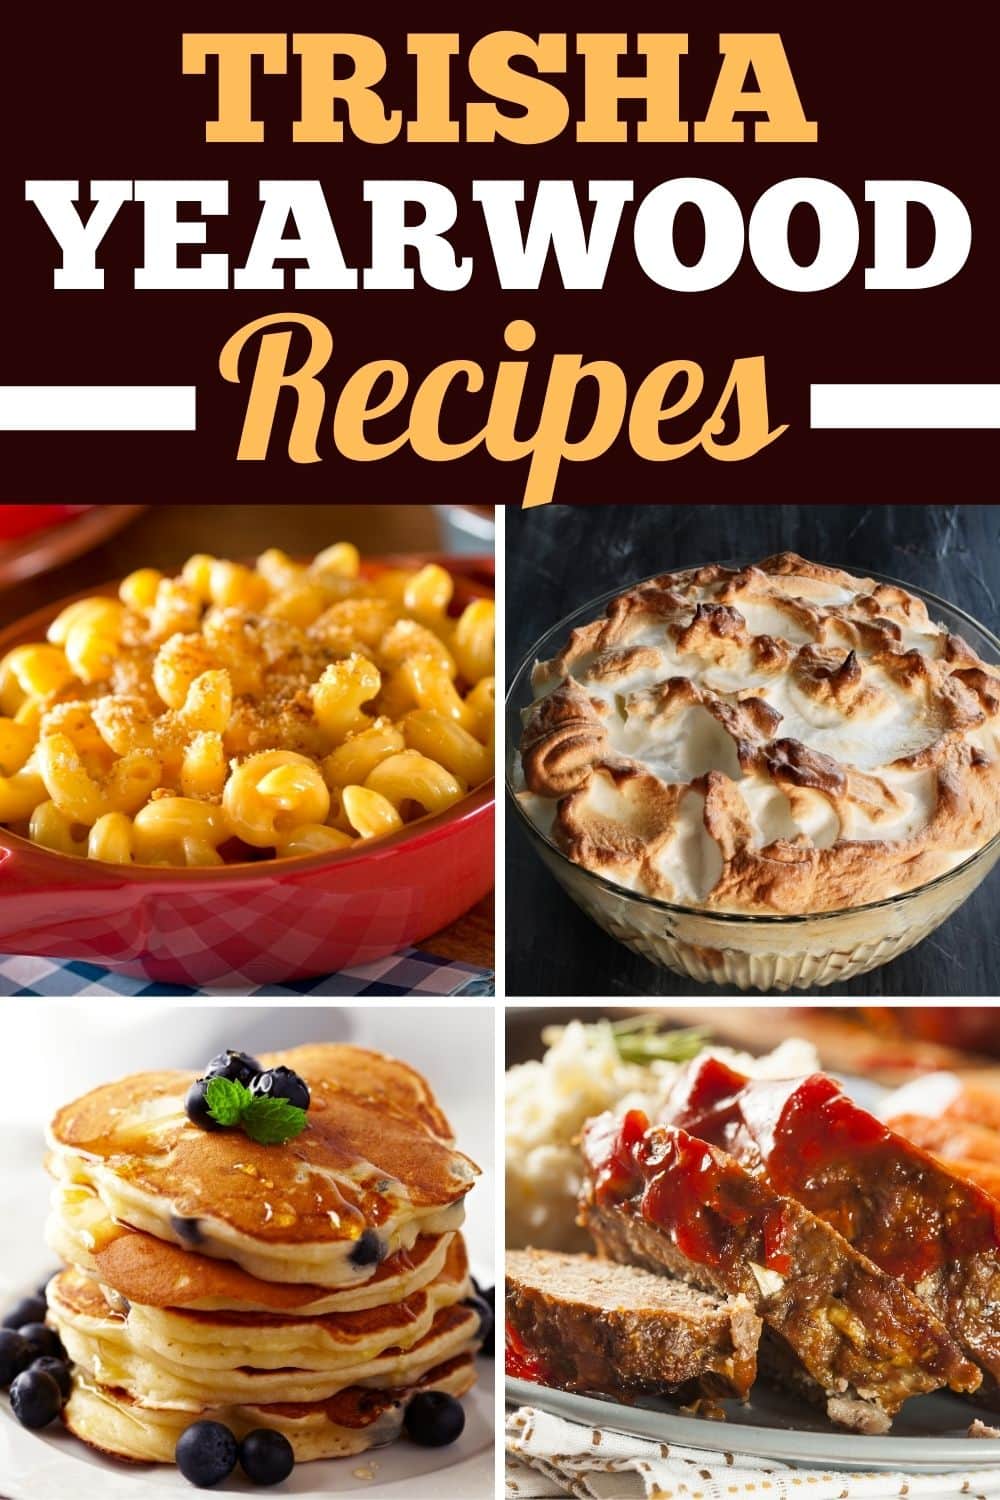 Trisha Yearwood Recipes 2 